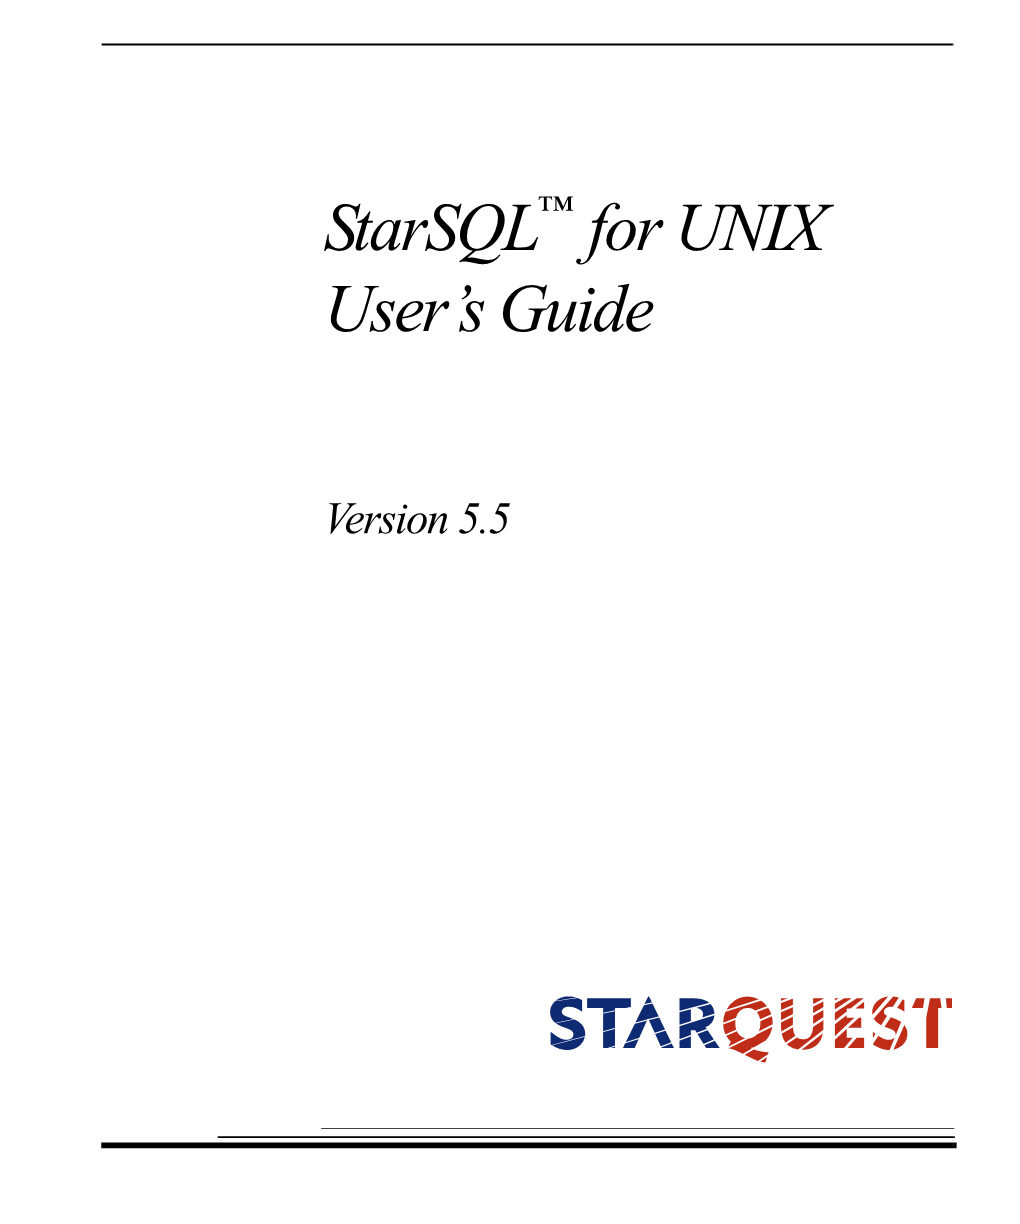 Starsql for UNIX User's Guide